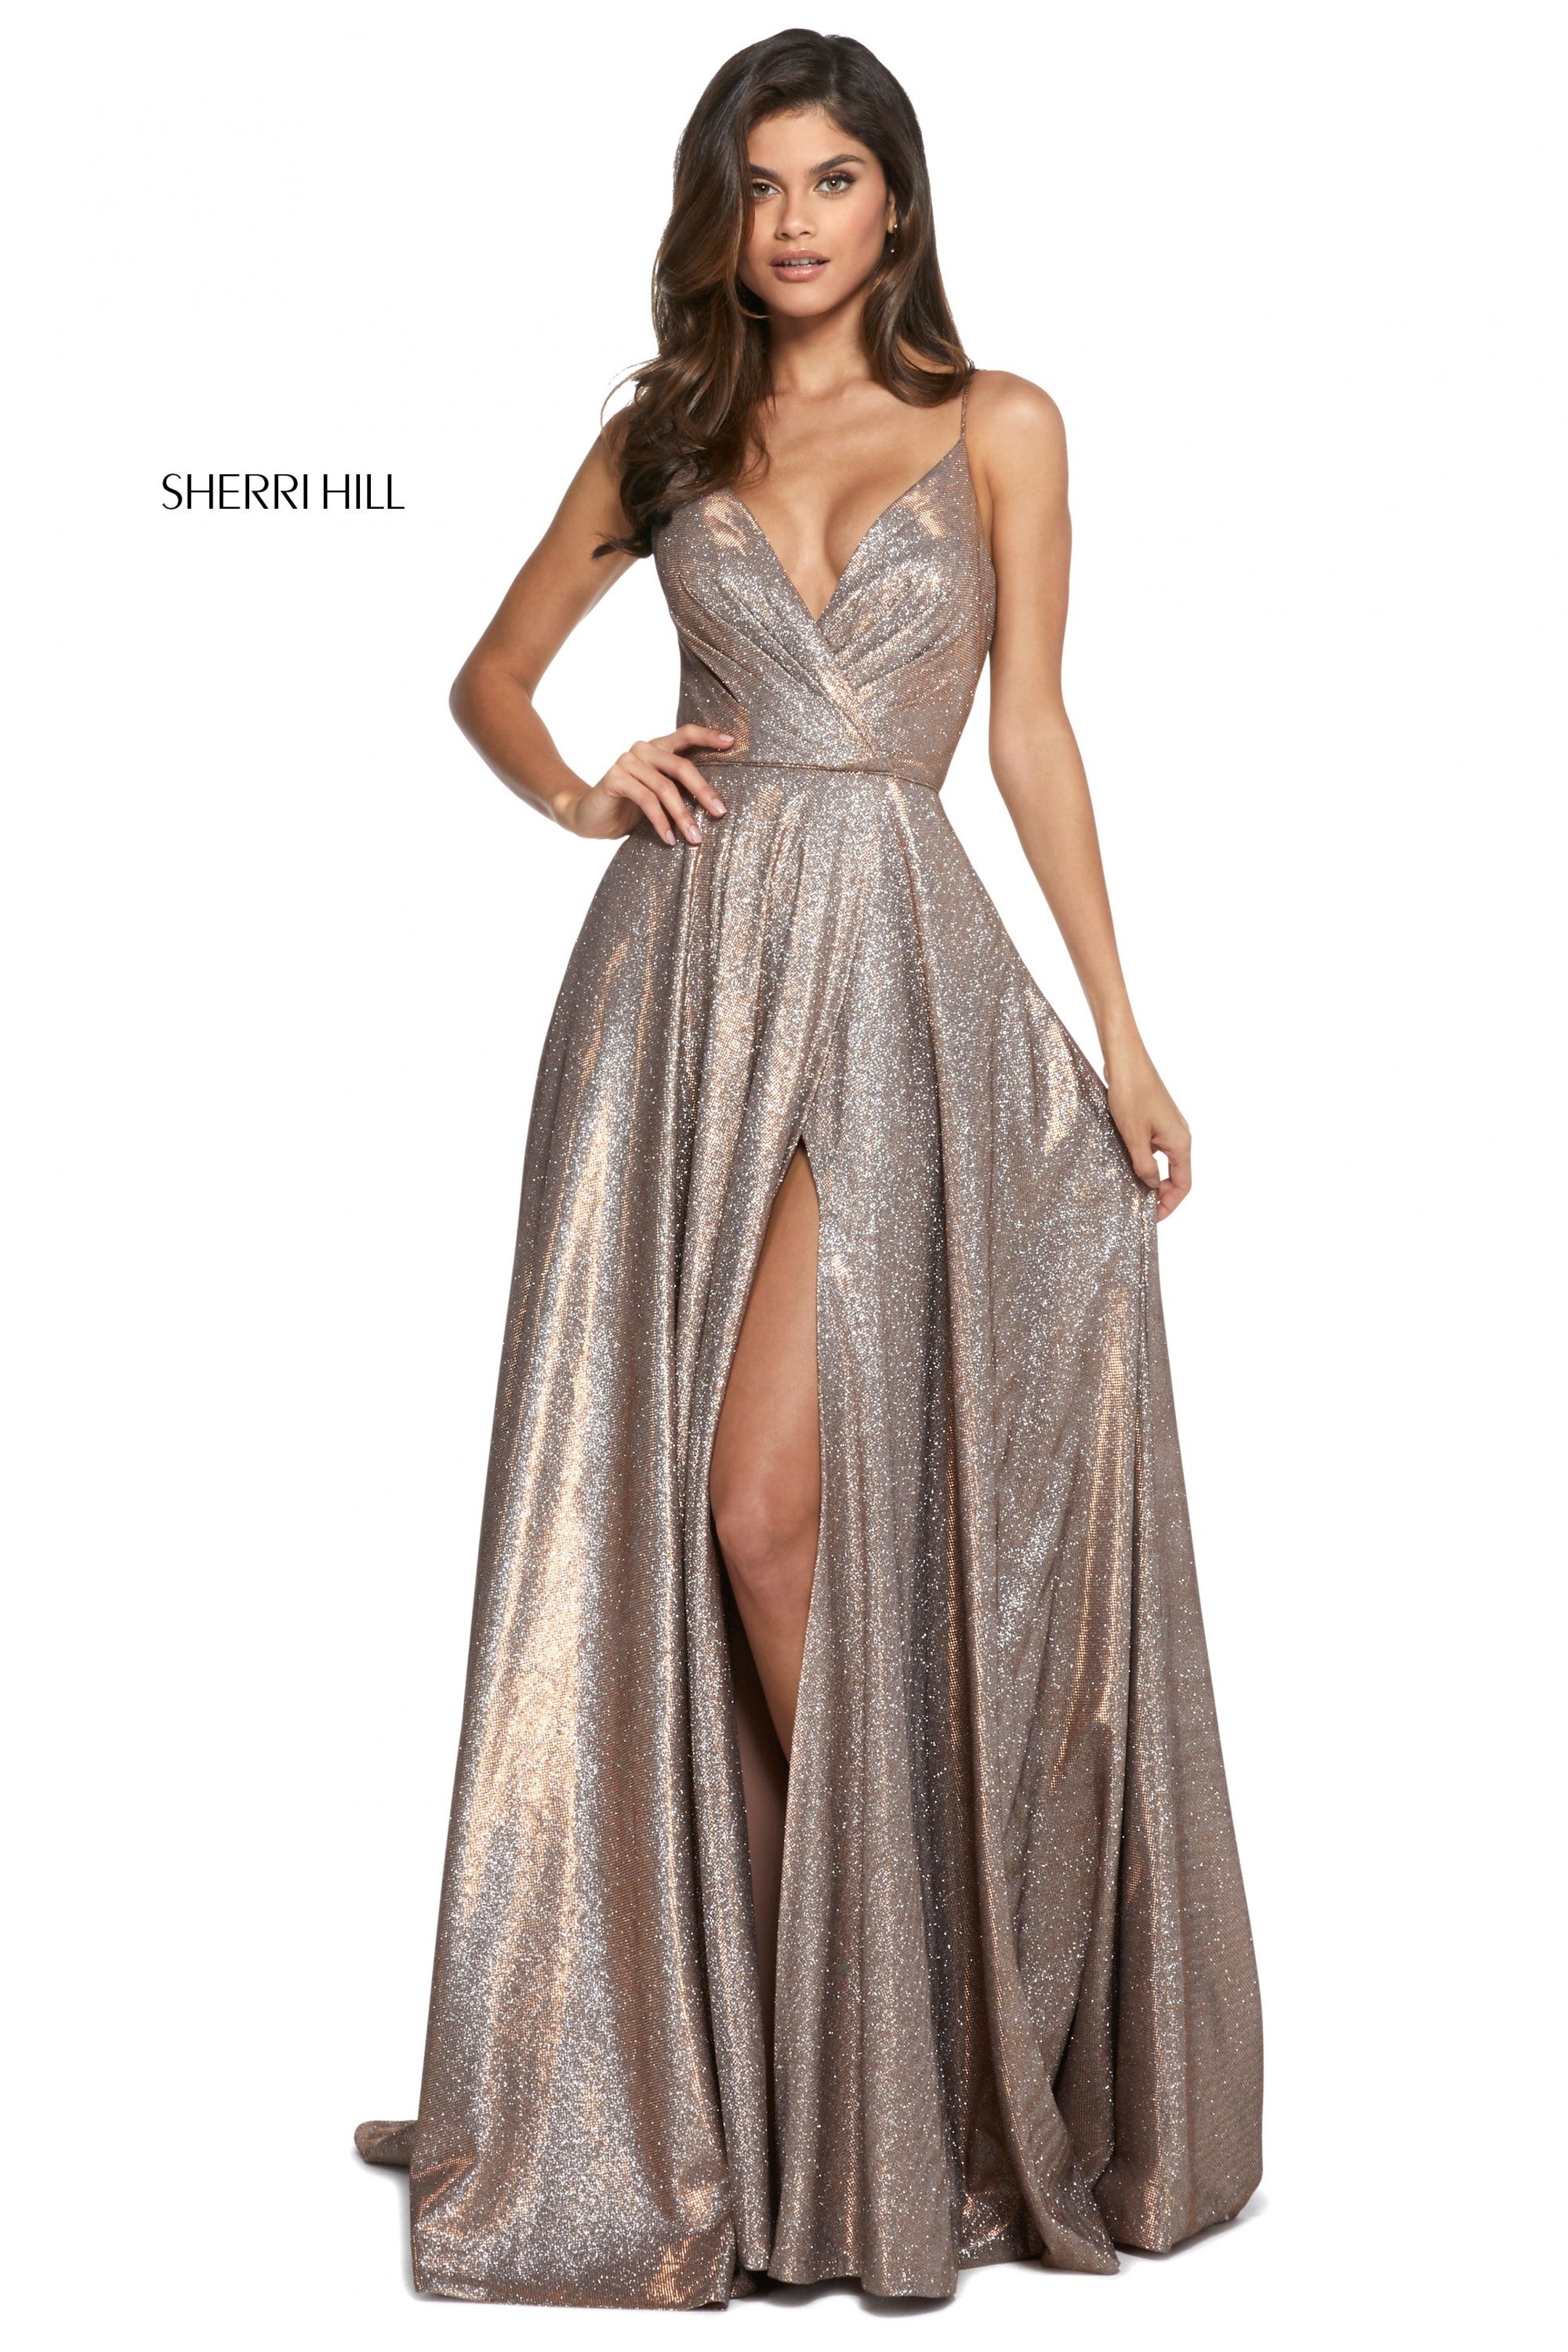 Sherri Hill 52977 Dress - Formal ...